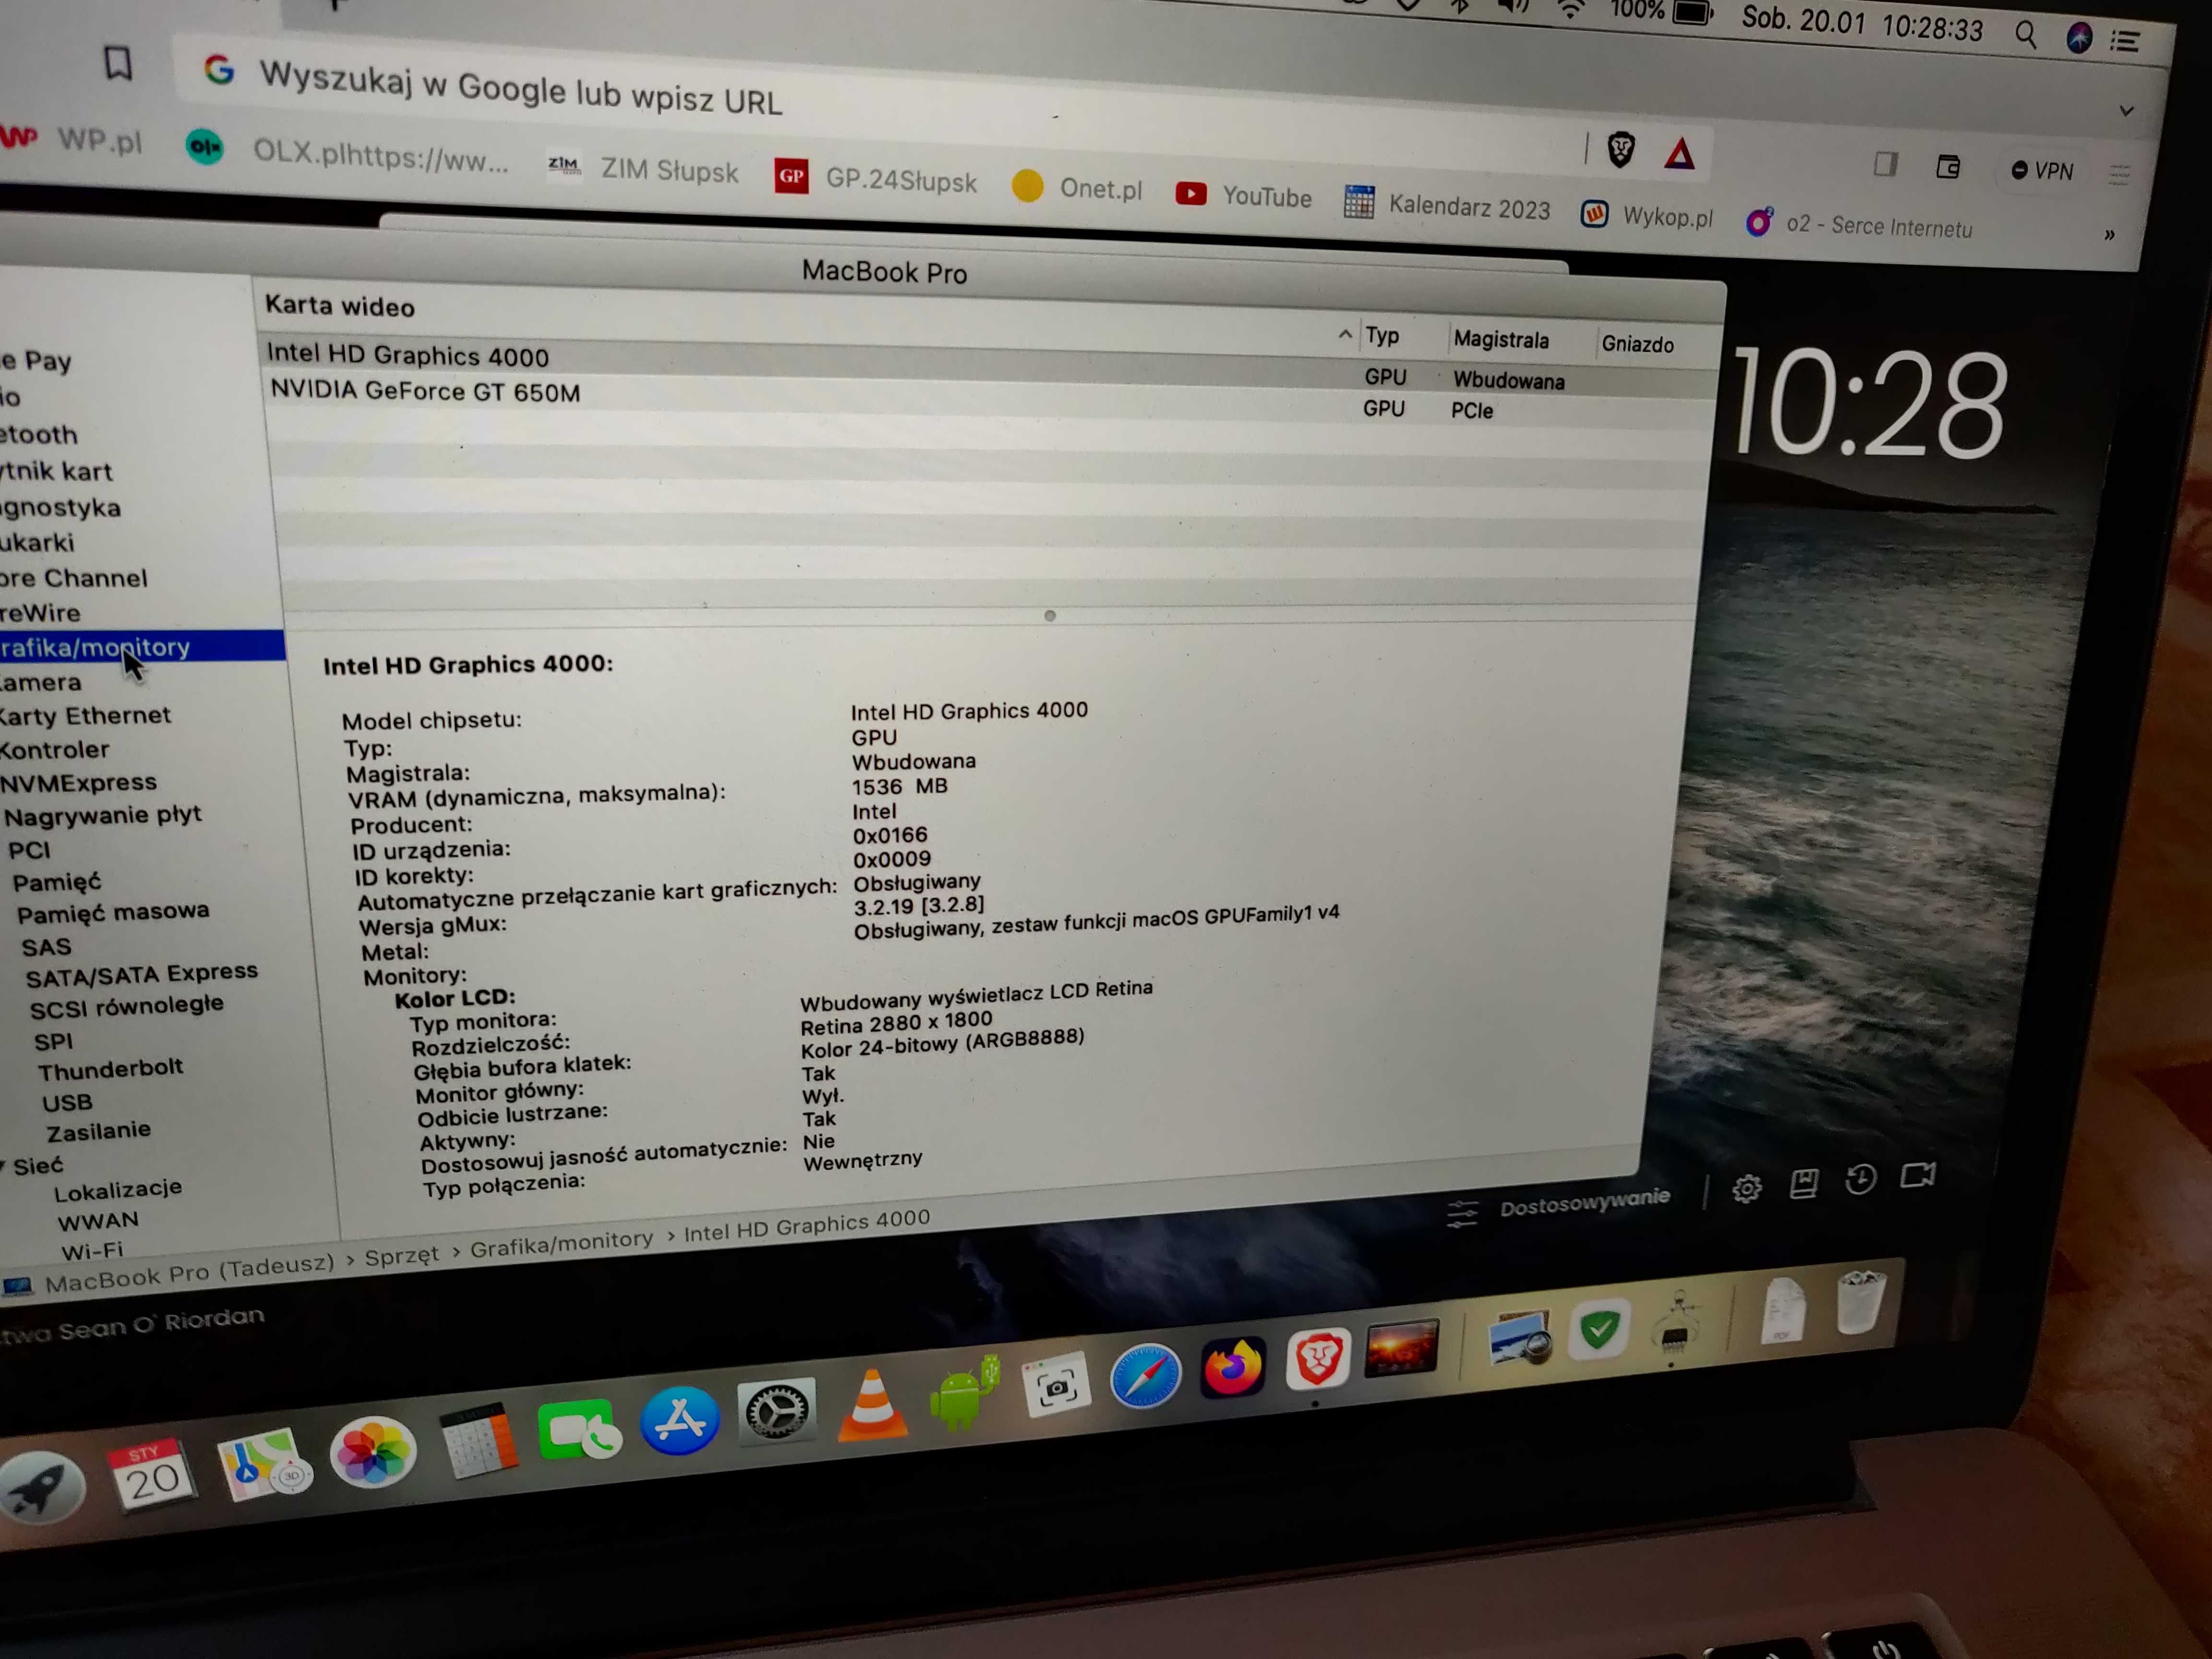 MacBook Pro retina 15,4" A1398 pilnie sprzedam z pow.wyjazdui.Obniżka!